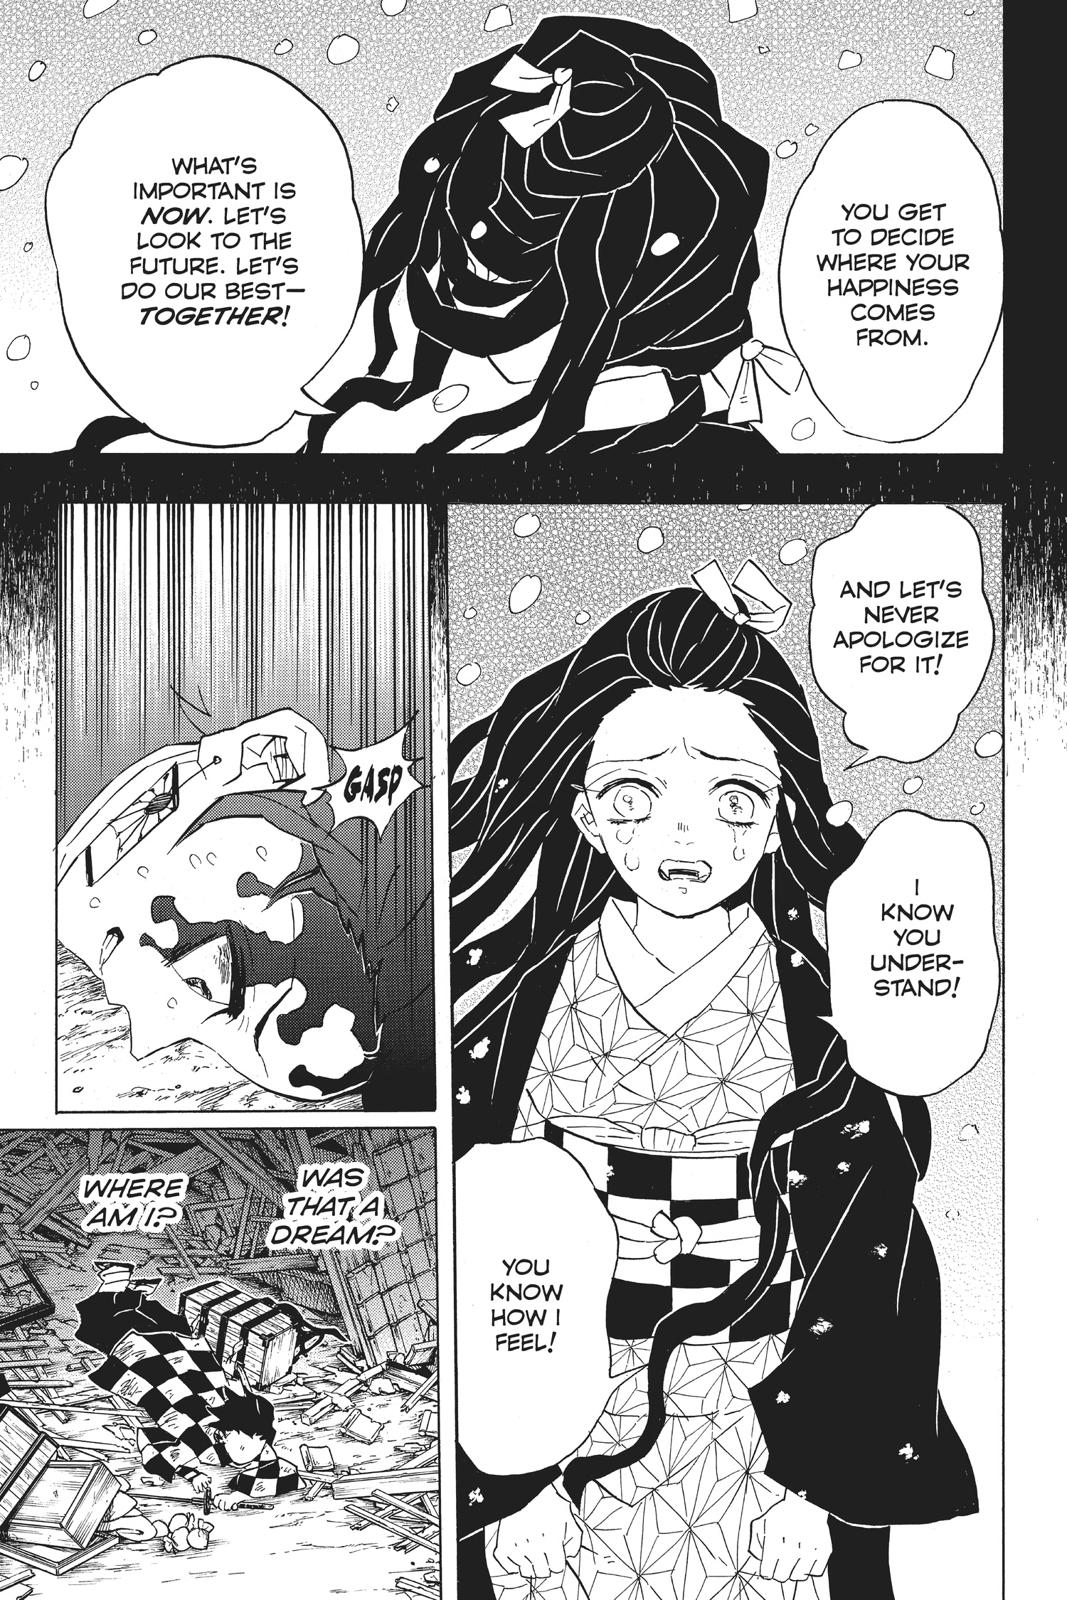 Demon Slayer Manga Manga Chapter - 92 - image 9